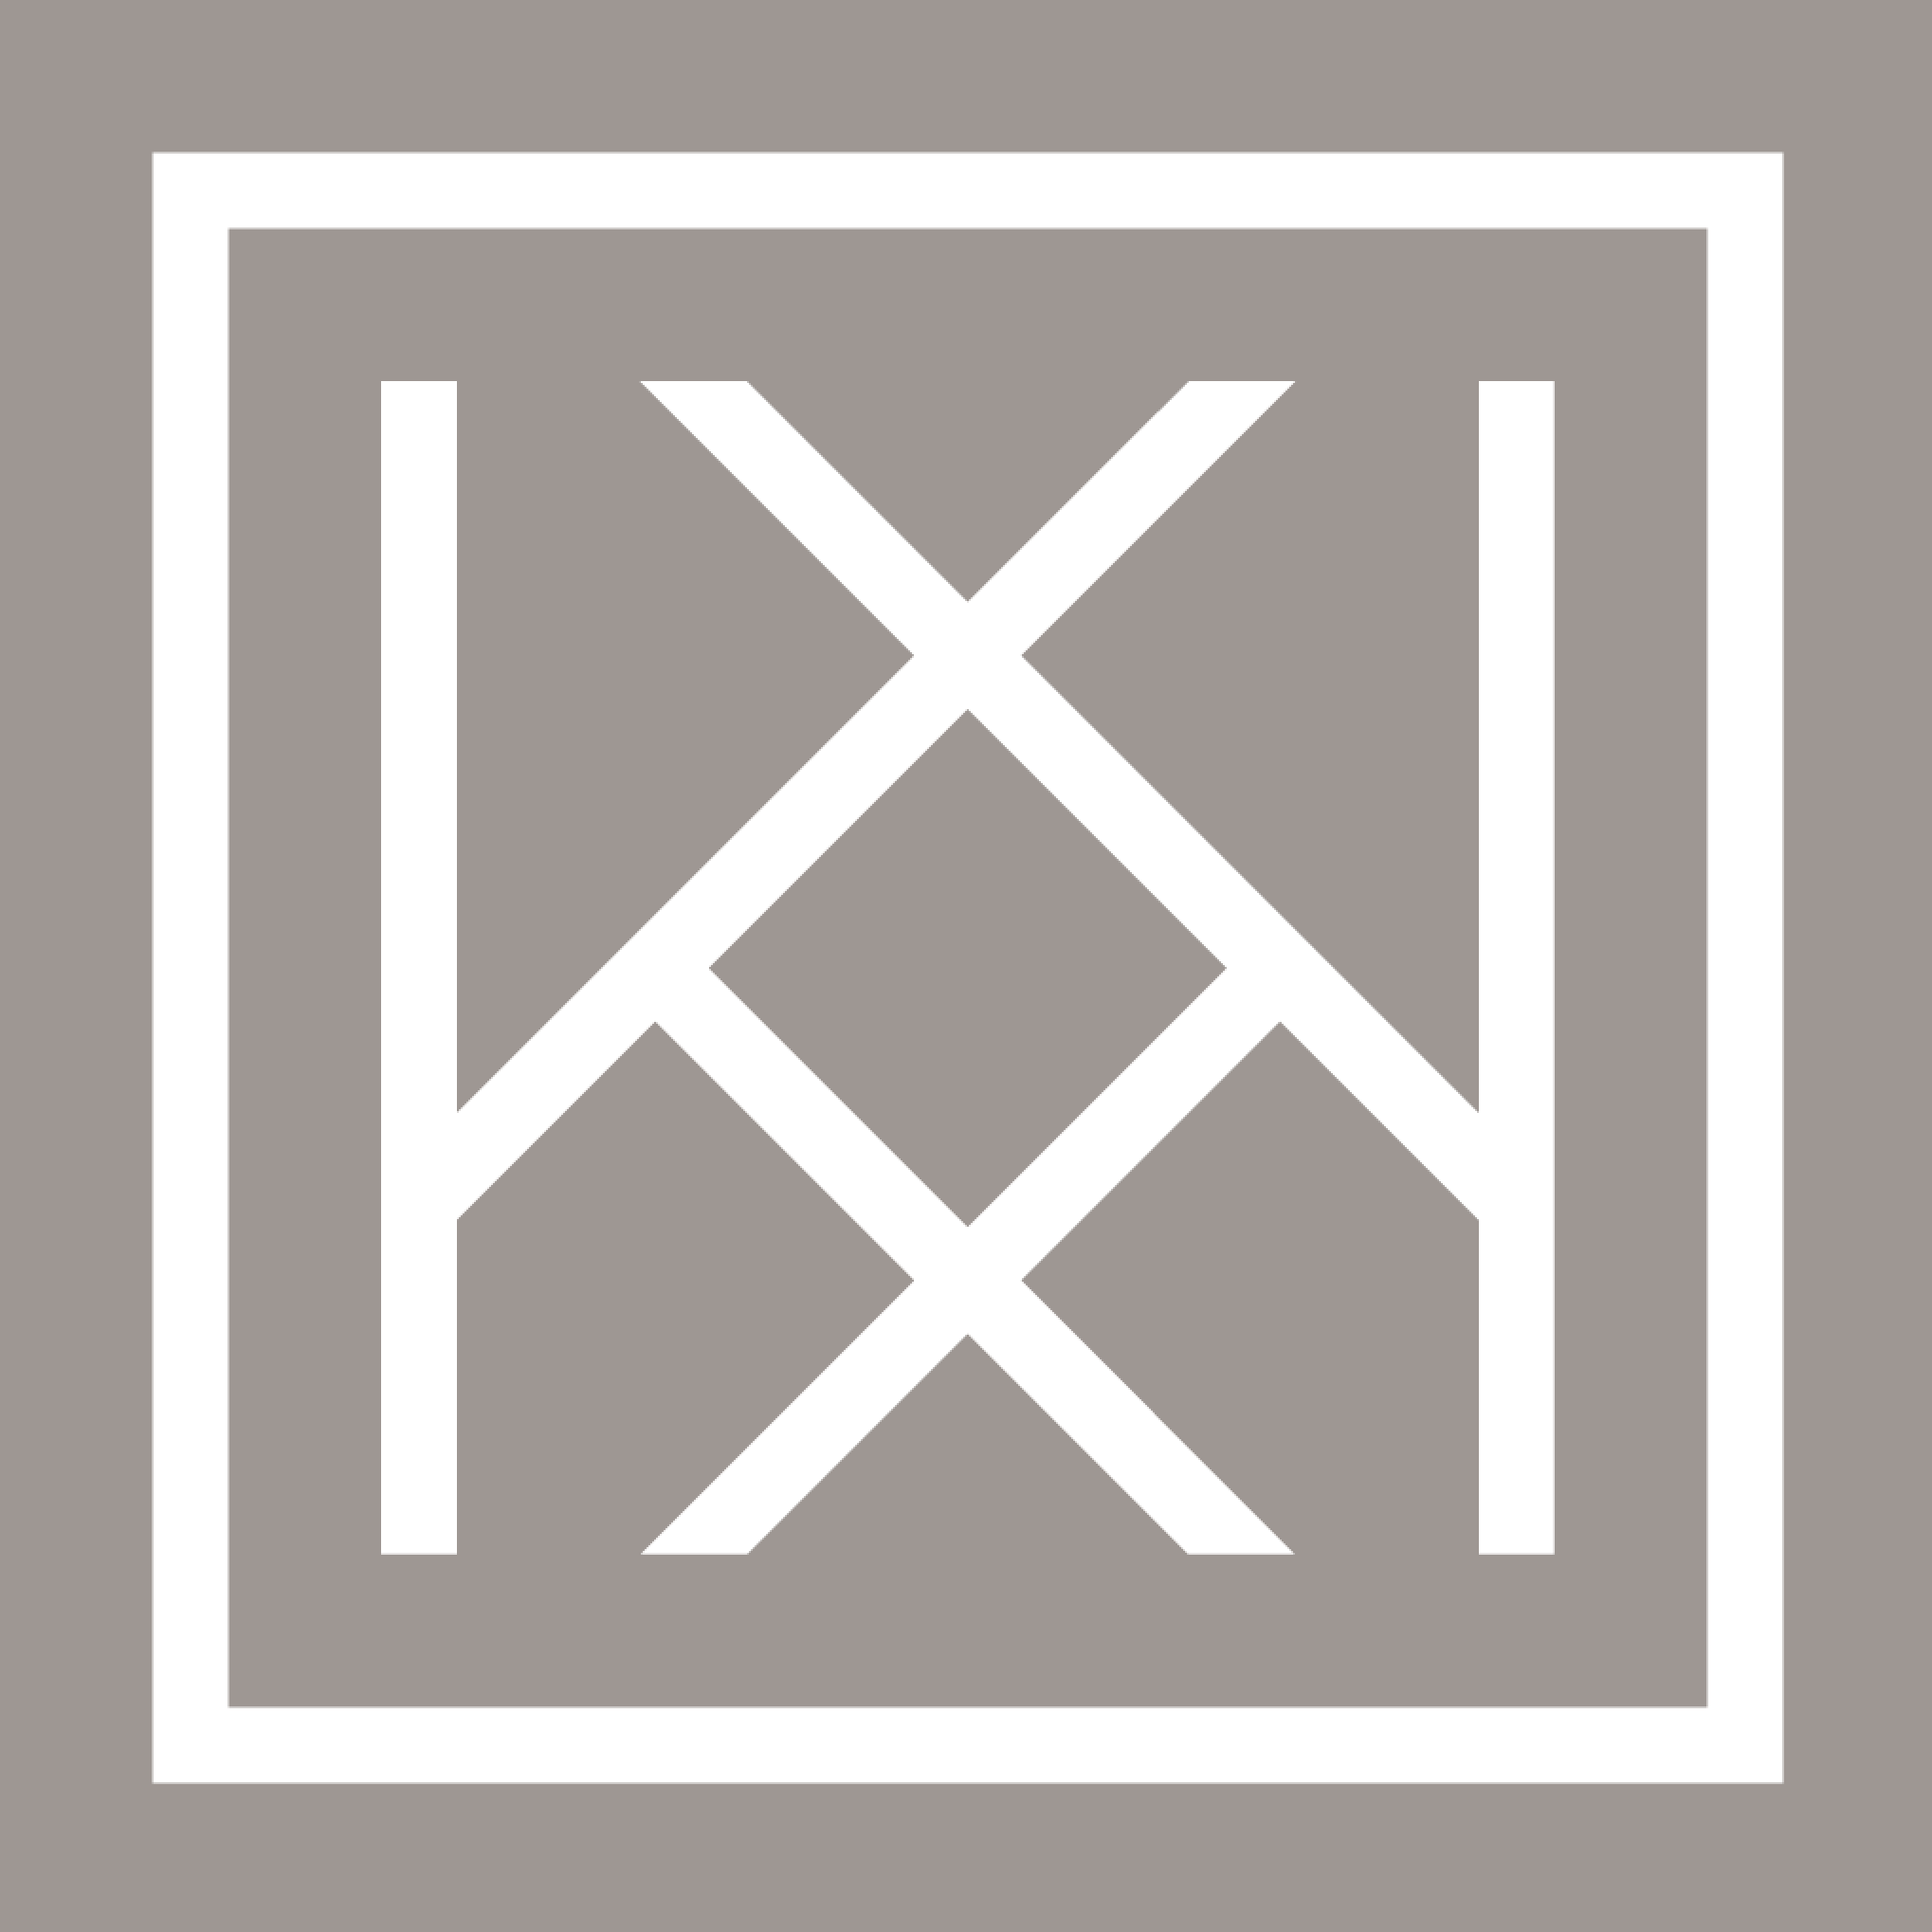 Company logo of Kathy Kuo Home